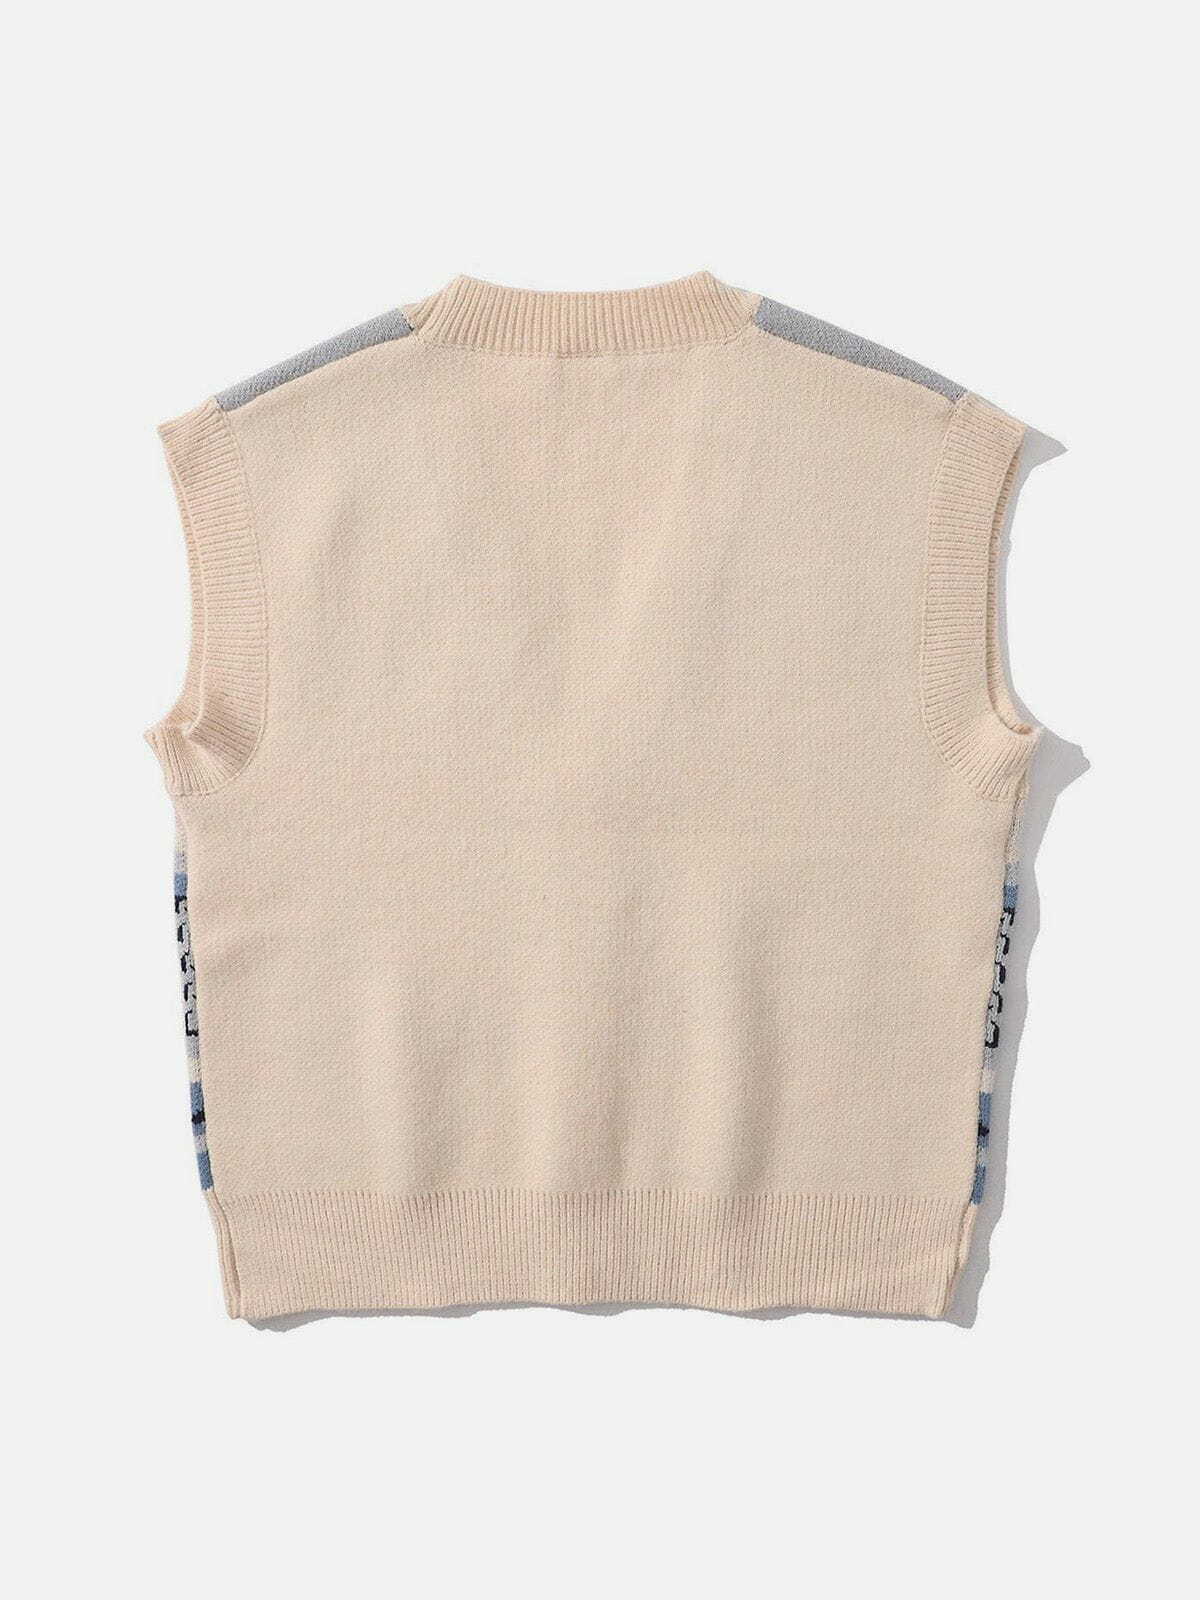 hand in hand knit sweater vest retro streetwear staple 8103